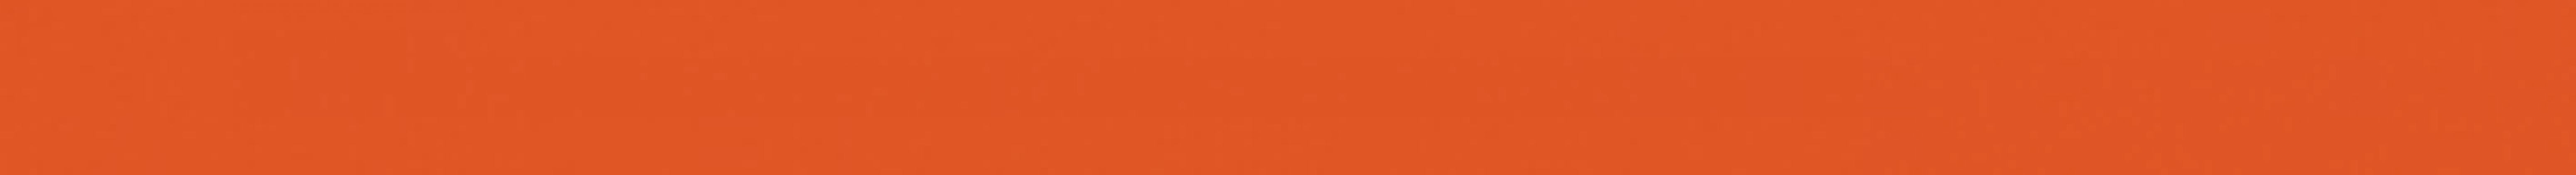 Monocolor Бордюр стеклянный Ral 2004 (оранжевый) 2x30